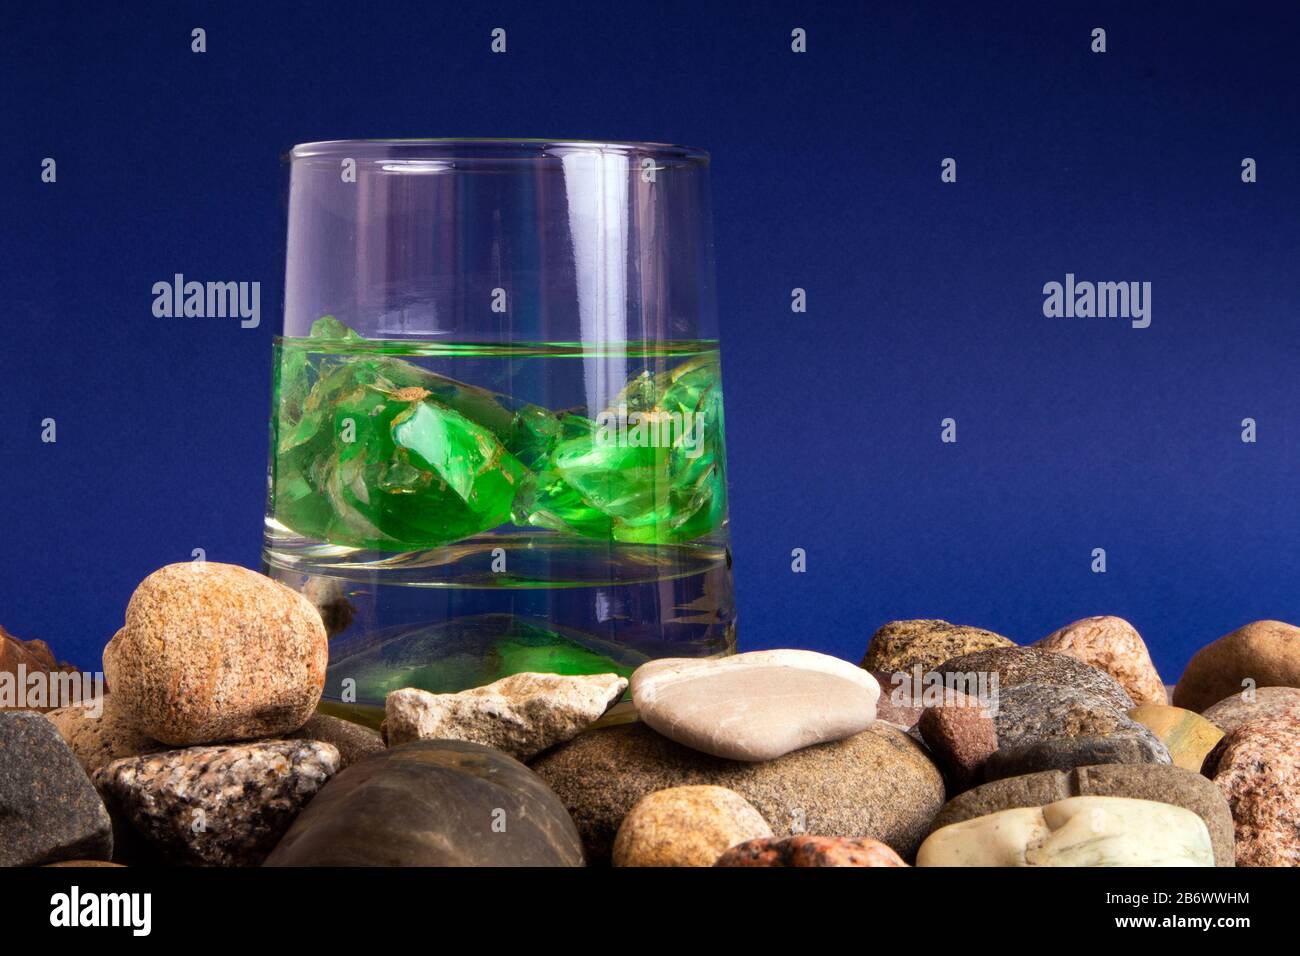 Verre avec de l'eau et deux pierres gemmes vertes à l'intérieur debout sur une pile de galets Banque D'Images